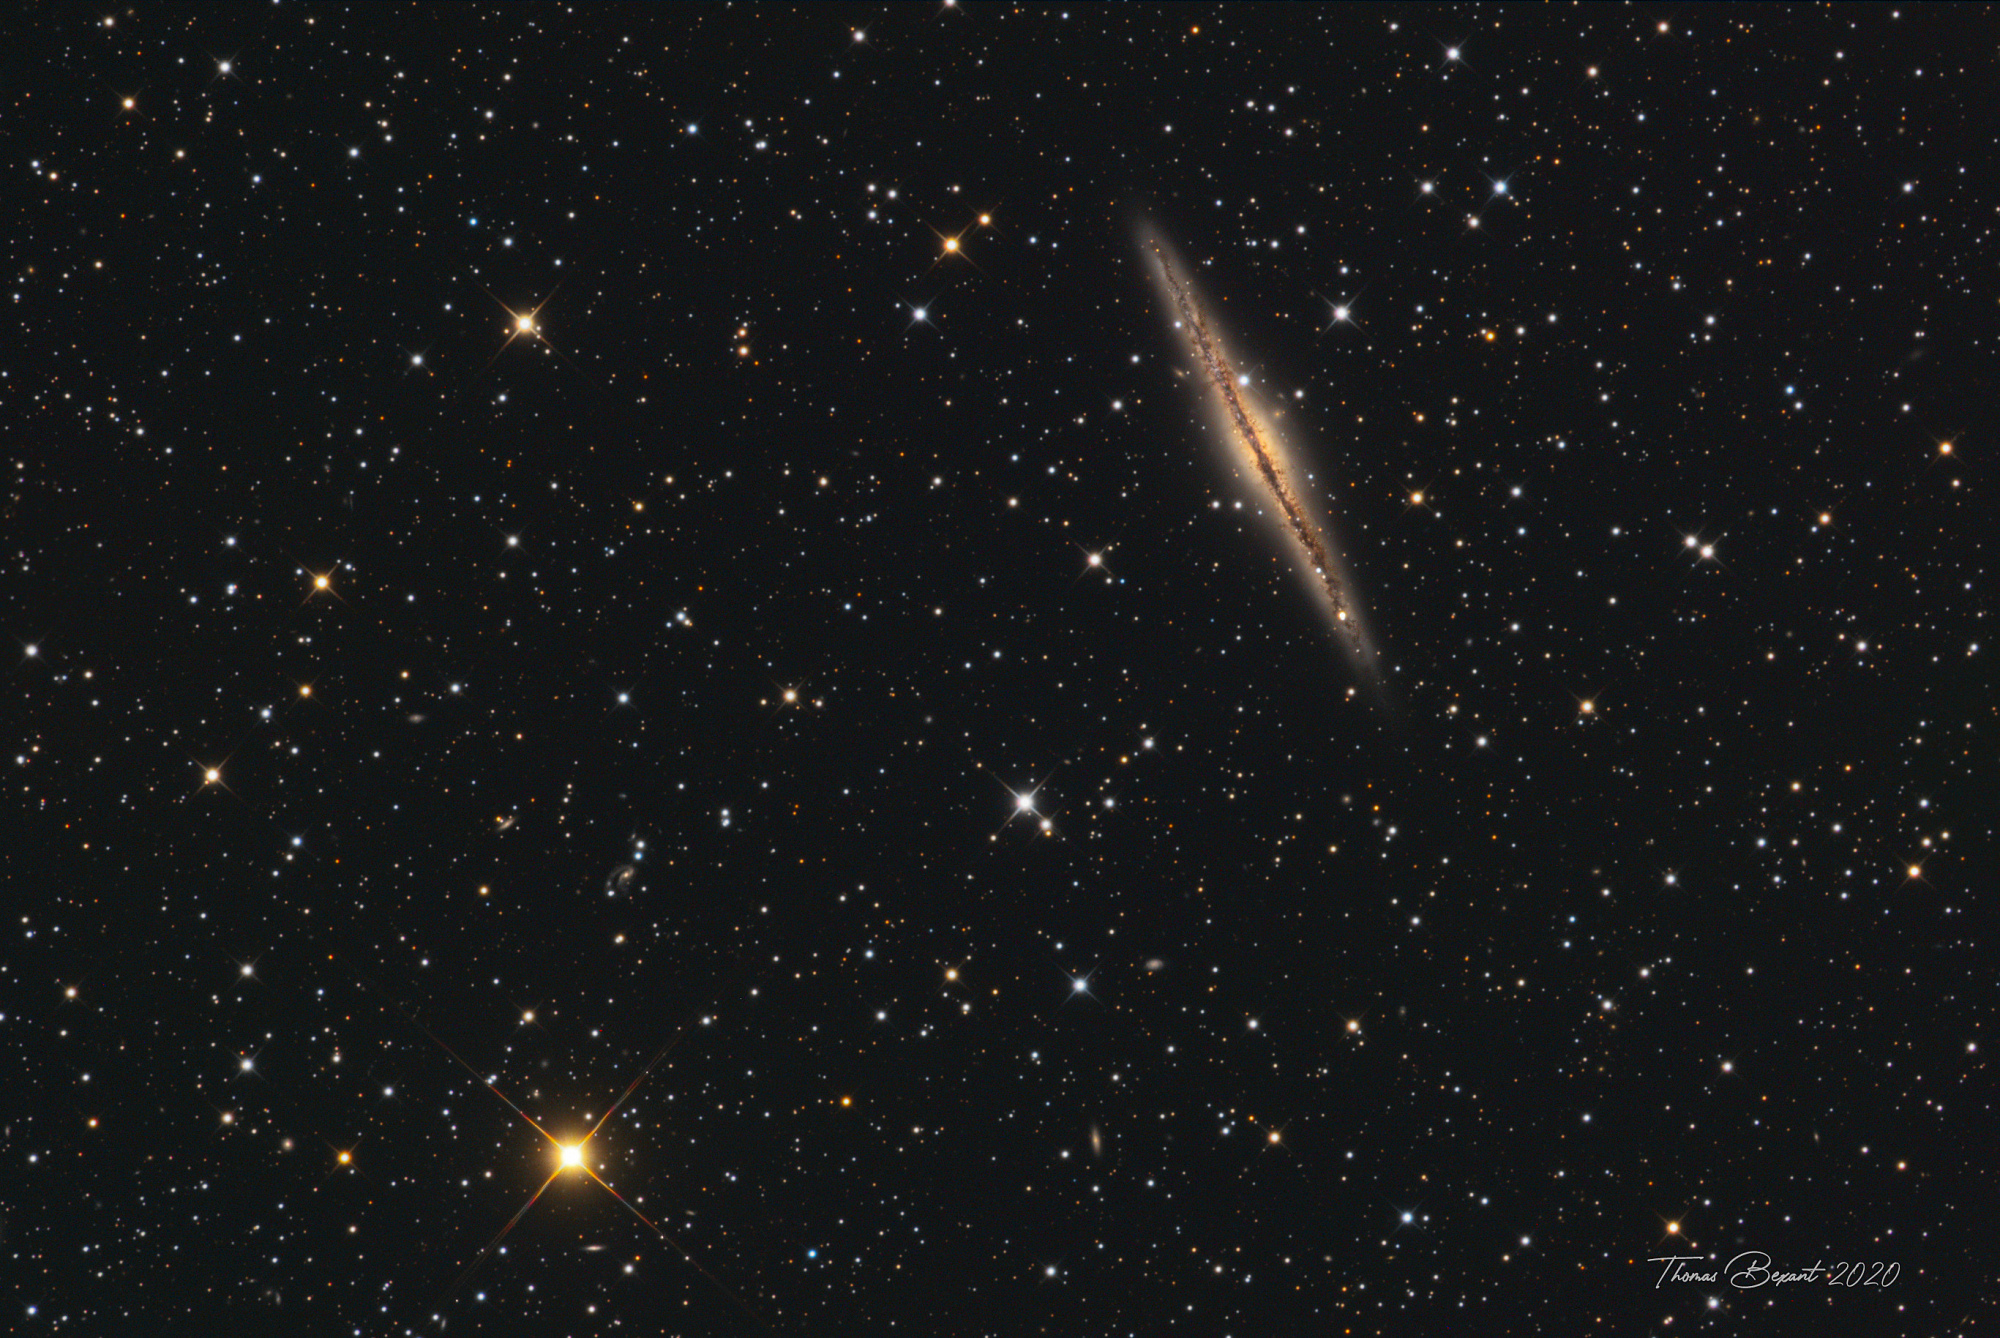 NGC891-TBexant-Newthom.jpg.a2250d757e06546159728da4757a293d.thumb.jpg.81b7559a010d7666b34d78a73d9ae018.jpg